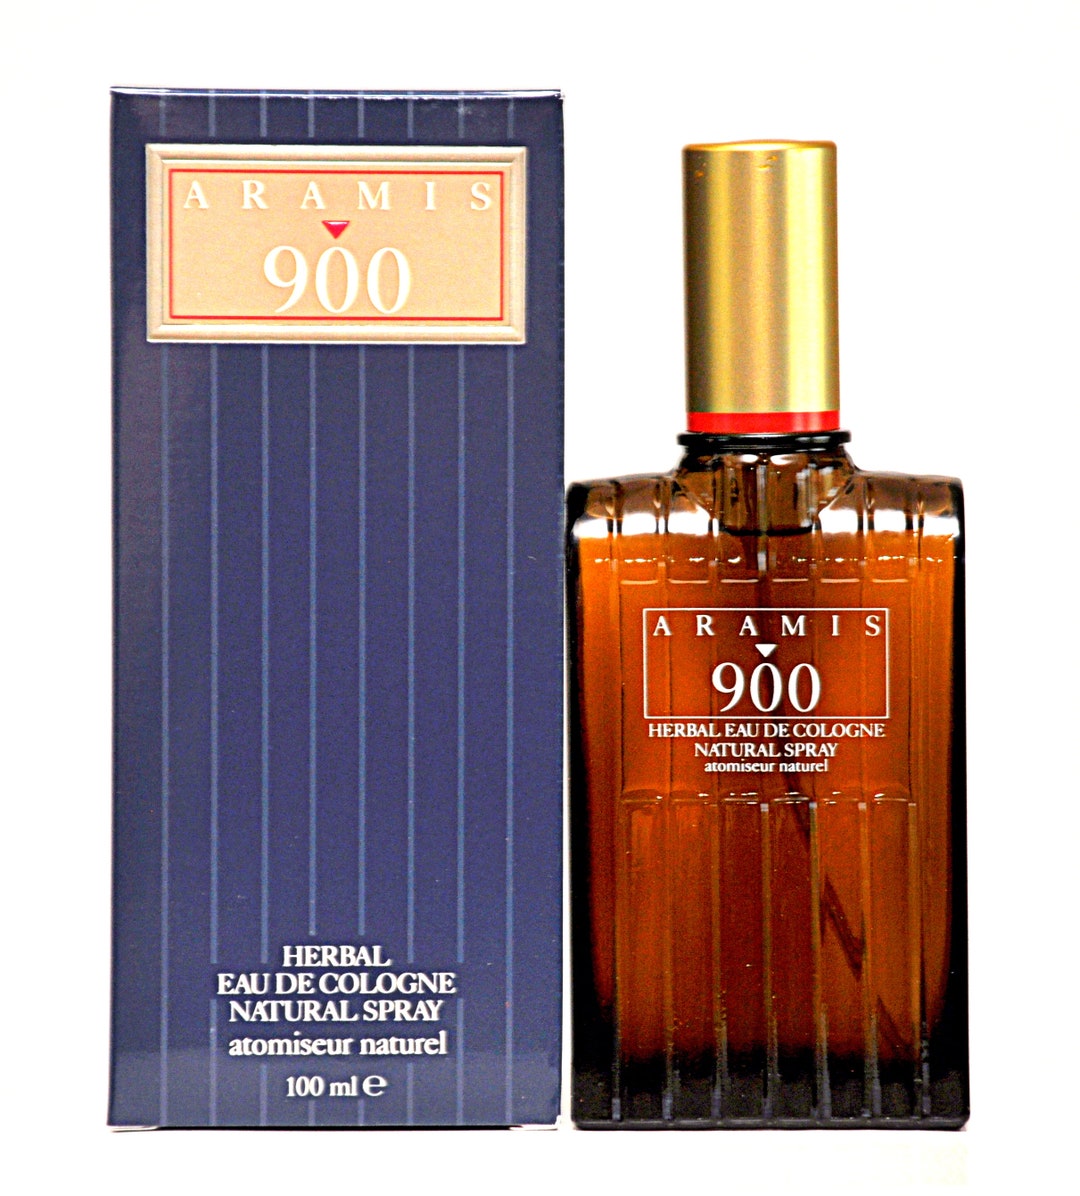 Aramis 900 by Aramis Herbal Eau De Cologne Edc 100ml 3,4 Fl. Oz. Spray  Perfume for Man Ultra Rare Vintage 1973 - Etsy